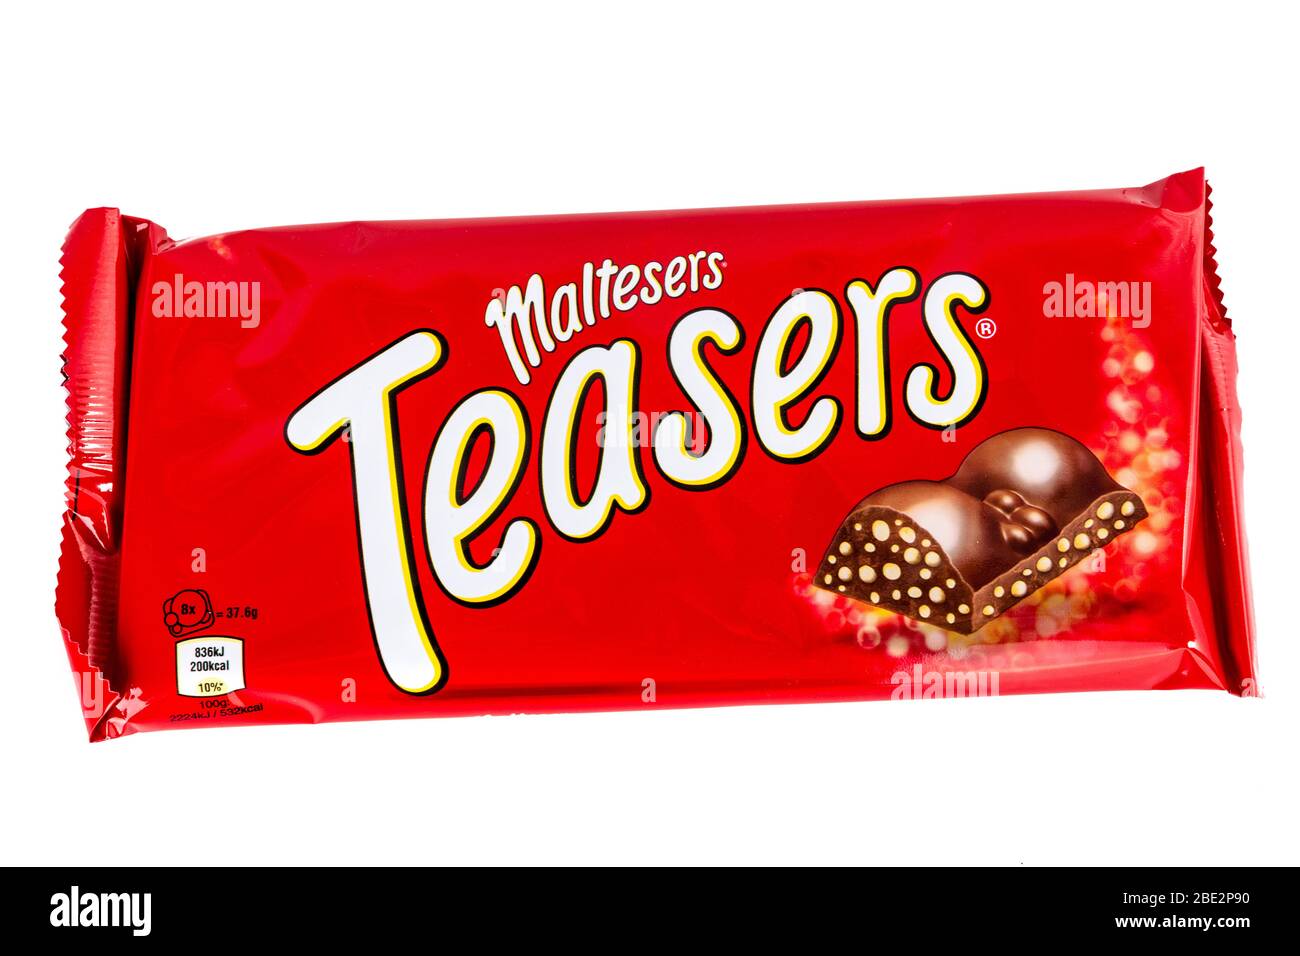 Barre de chocolat à teasers de MALTESERS, marque Mars, confiseries, barre de chocolat Maltesers, barre de maltesers, barre de chocolat, bar, chocolat, barres, gommes à thé Banque D'Images